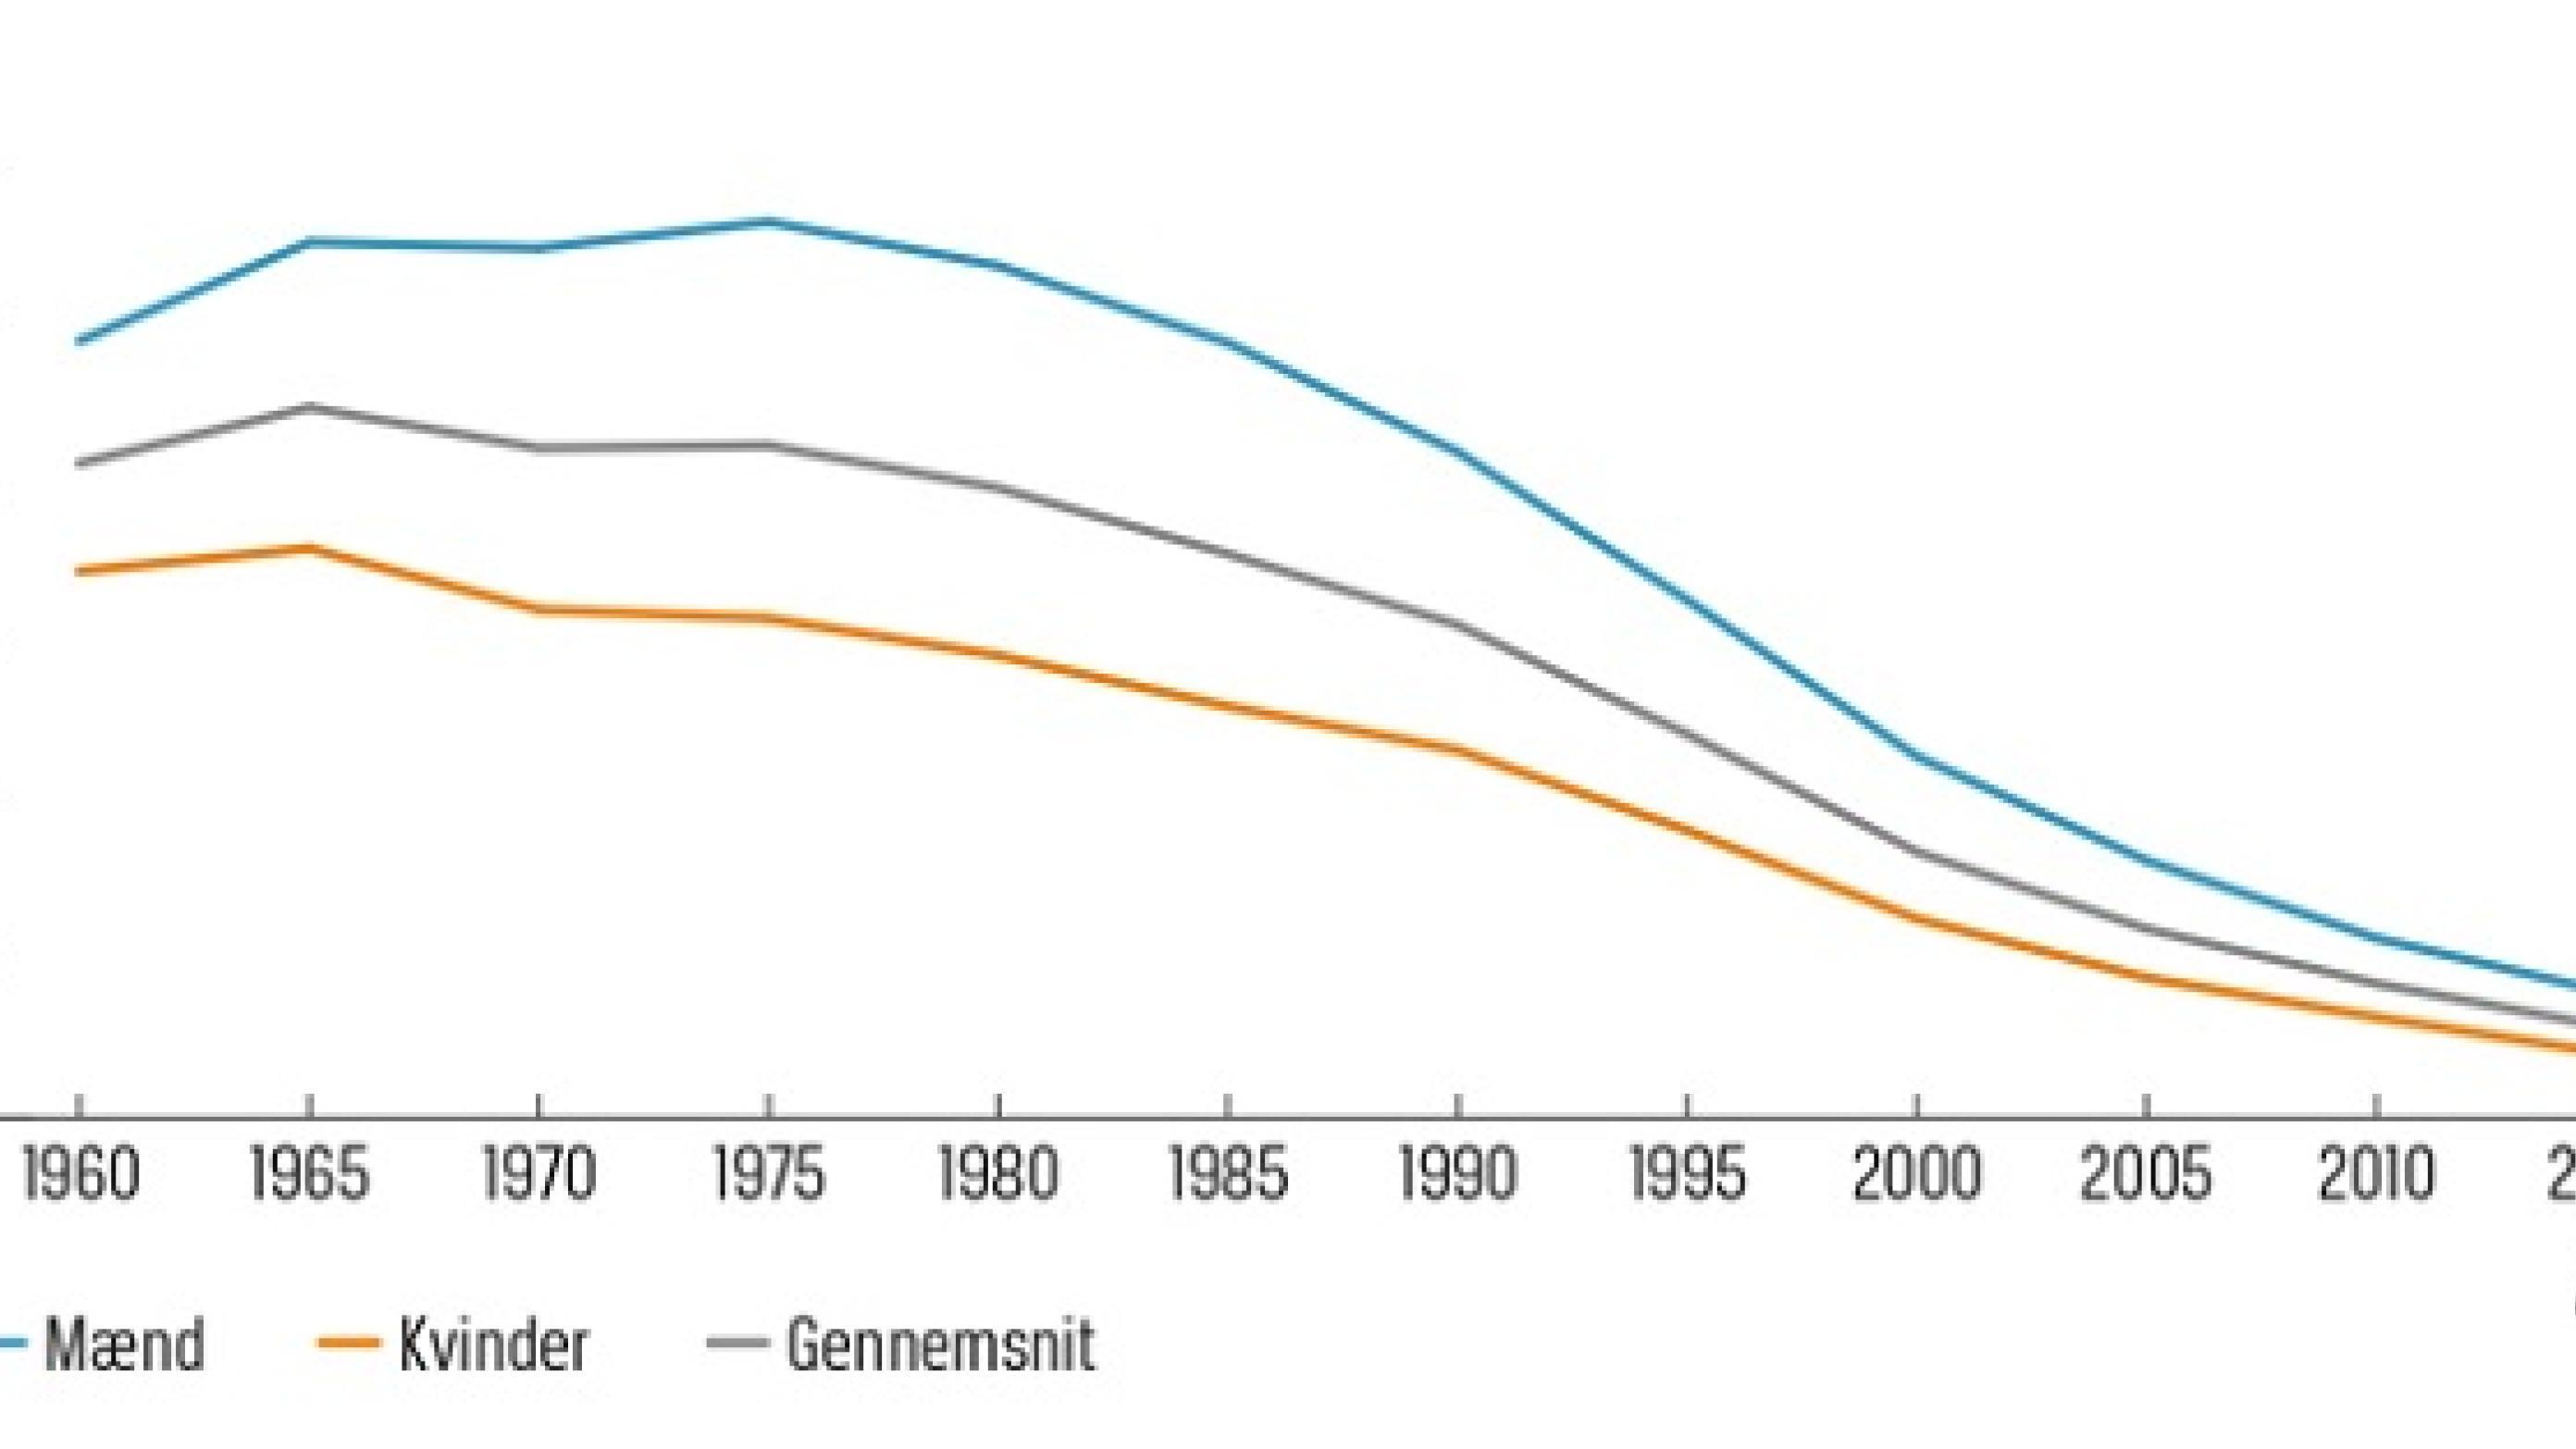 Aldersstandardiseret mortalitet af iskæmisk hjertesygdom pr. 100.000 indbyggere i Danmark i perioden 1960-2015.